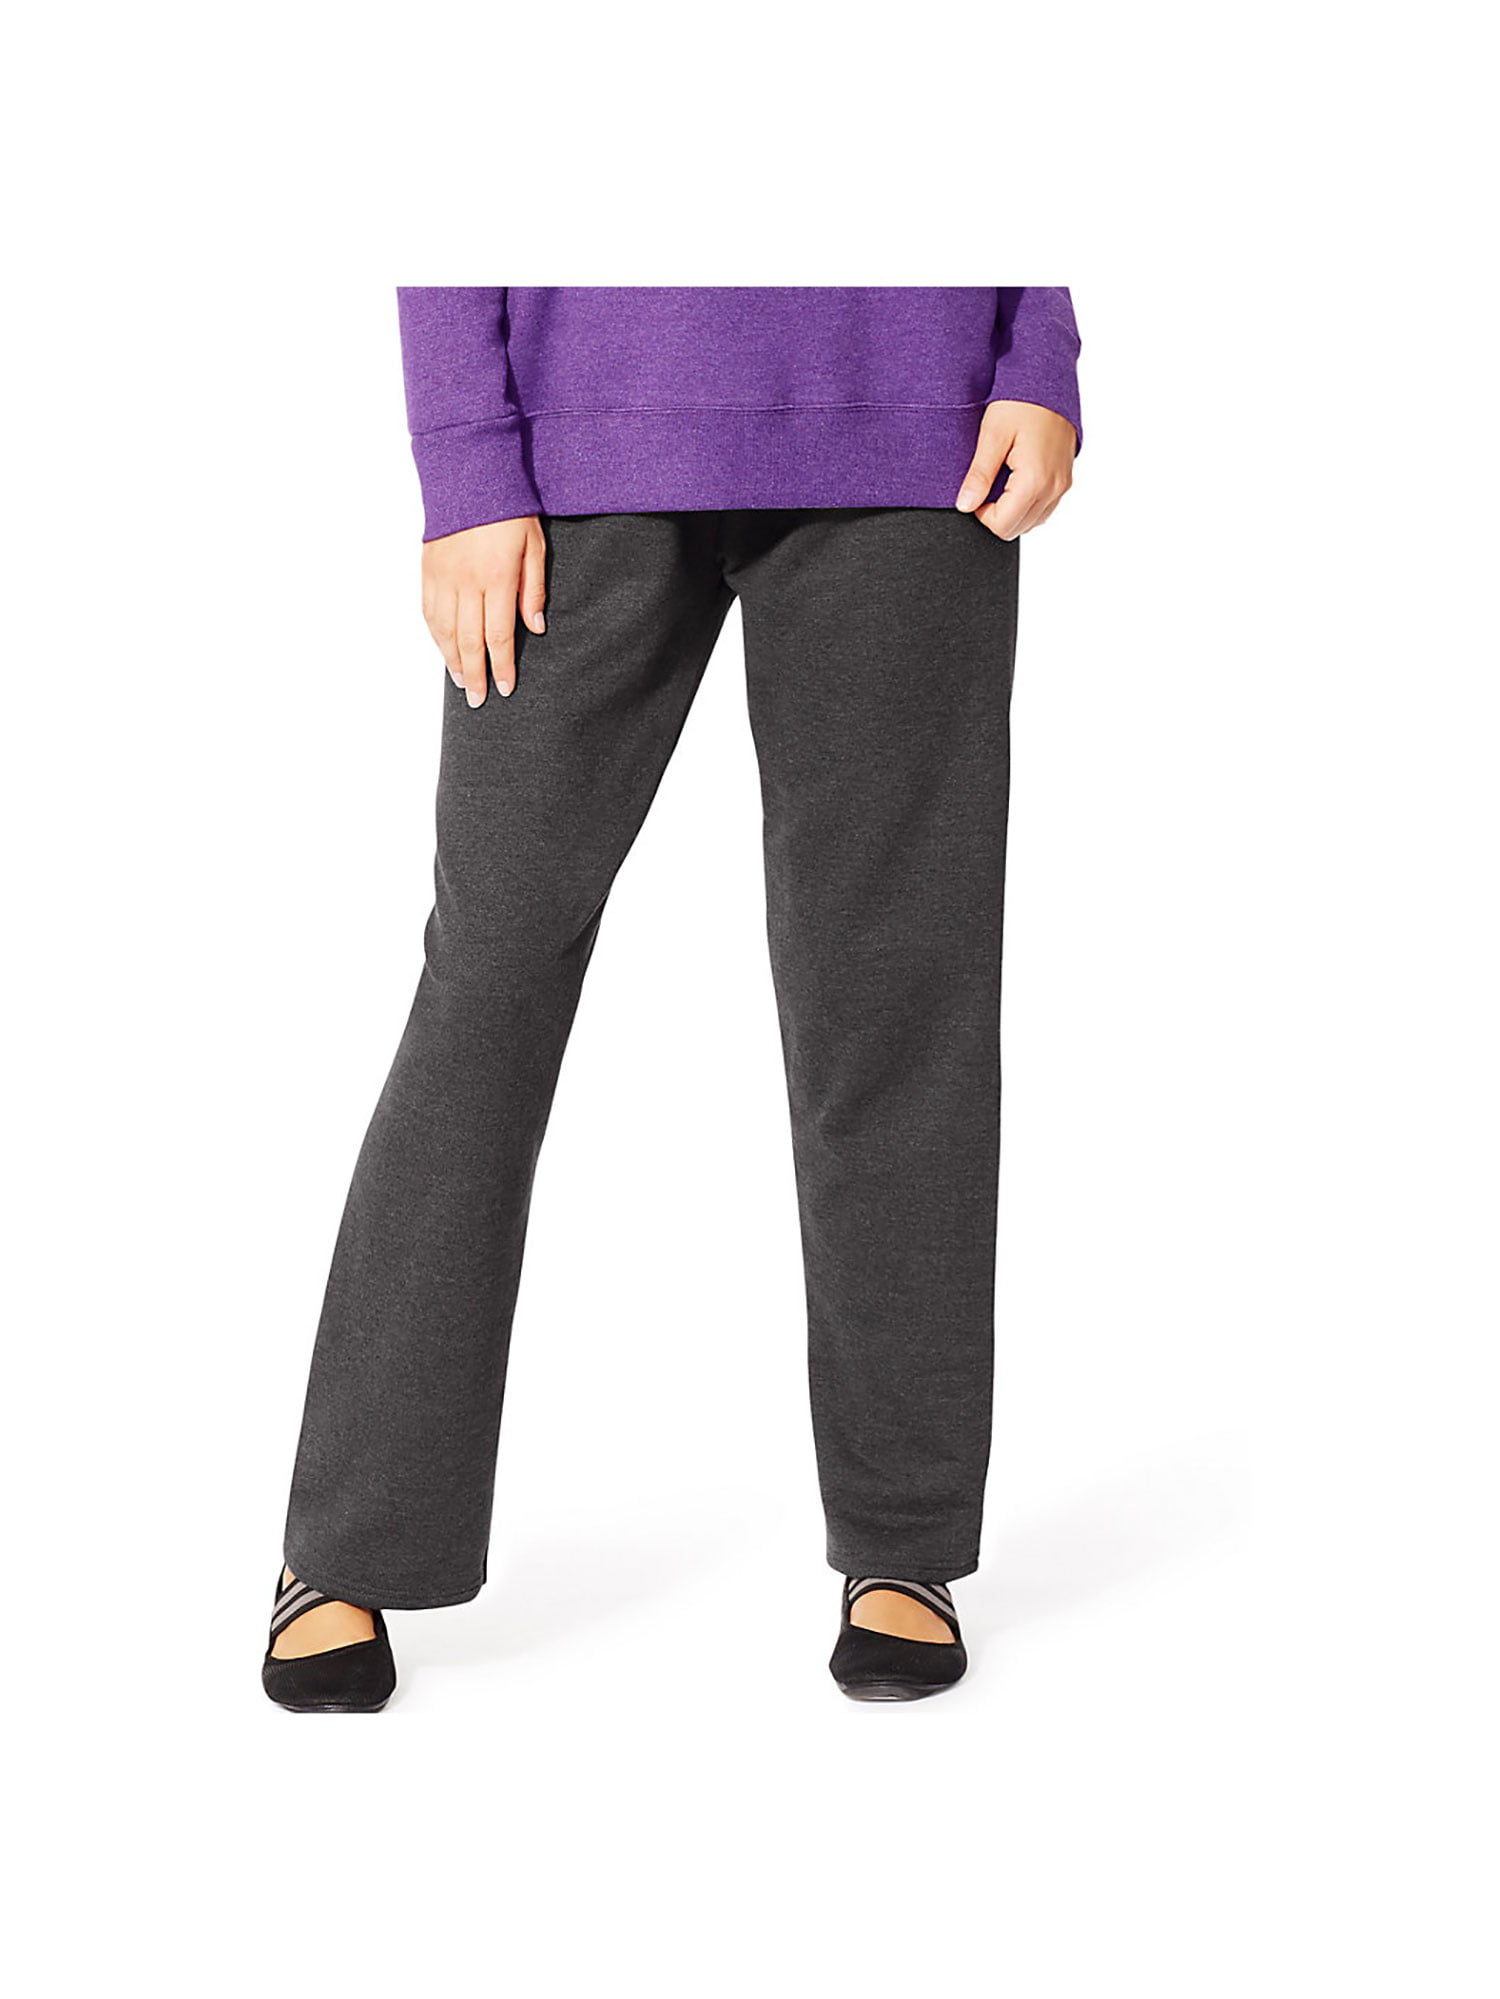 Women's Petite Length Fleece Open-Hem Sweatpants, Style OJ104 - Walmart.com